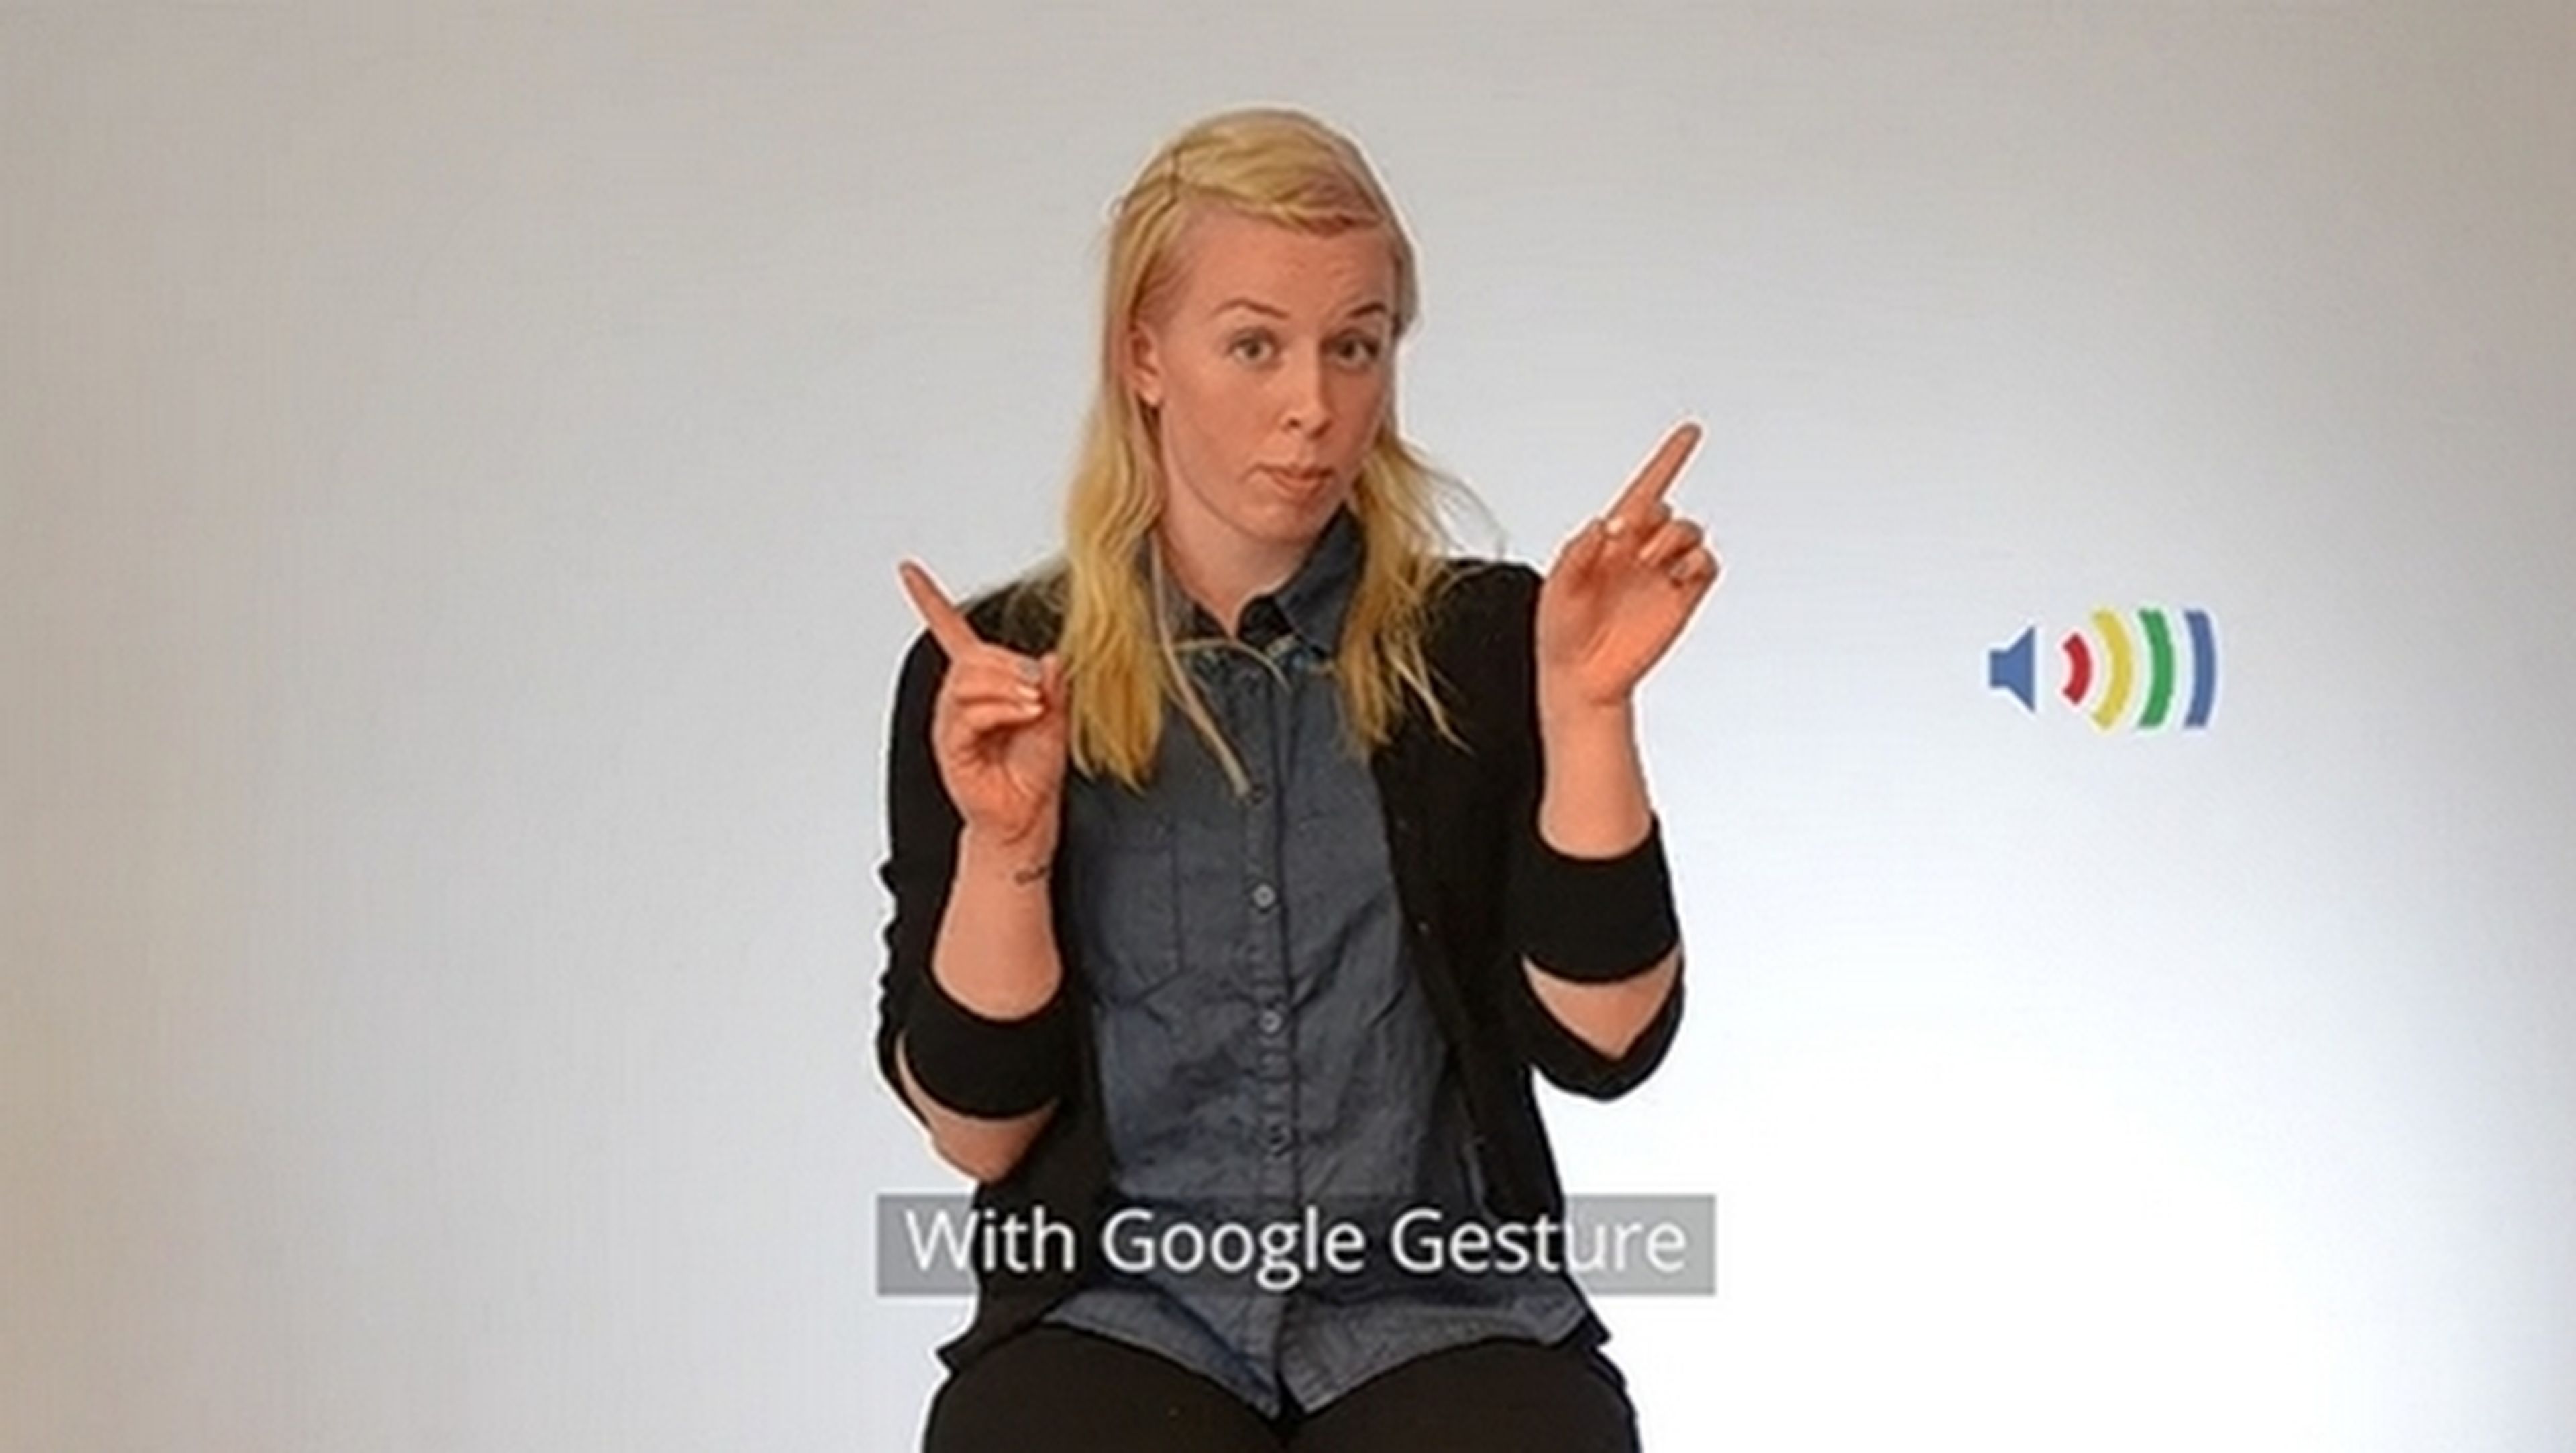 Google Gesture un traductor a voz del lenguaje de signos para sordomudos.